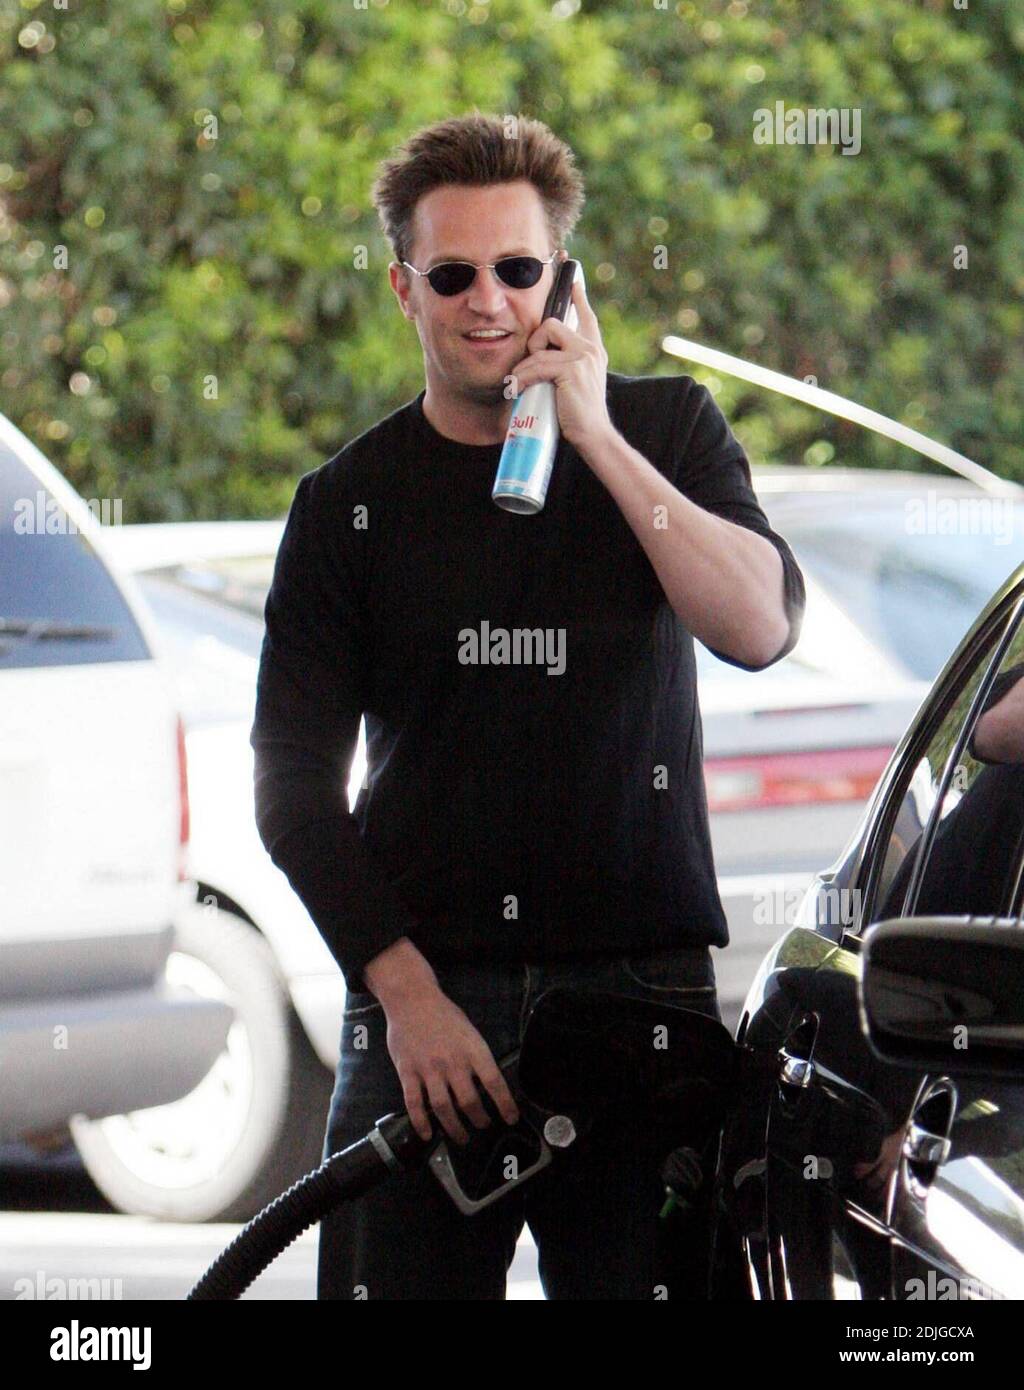 Exklusiv!! Matthew Perry mutli Aufgaben in Beverly Hills, ca. Der Schauspieler unterhielt sich auf dem Handy, während er seinen Tank füllte und sich an einer Dose des Energy Drinks, Diet Red Bull, hielt 03/02/06 [[rac]] Stockfoto